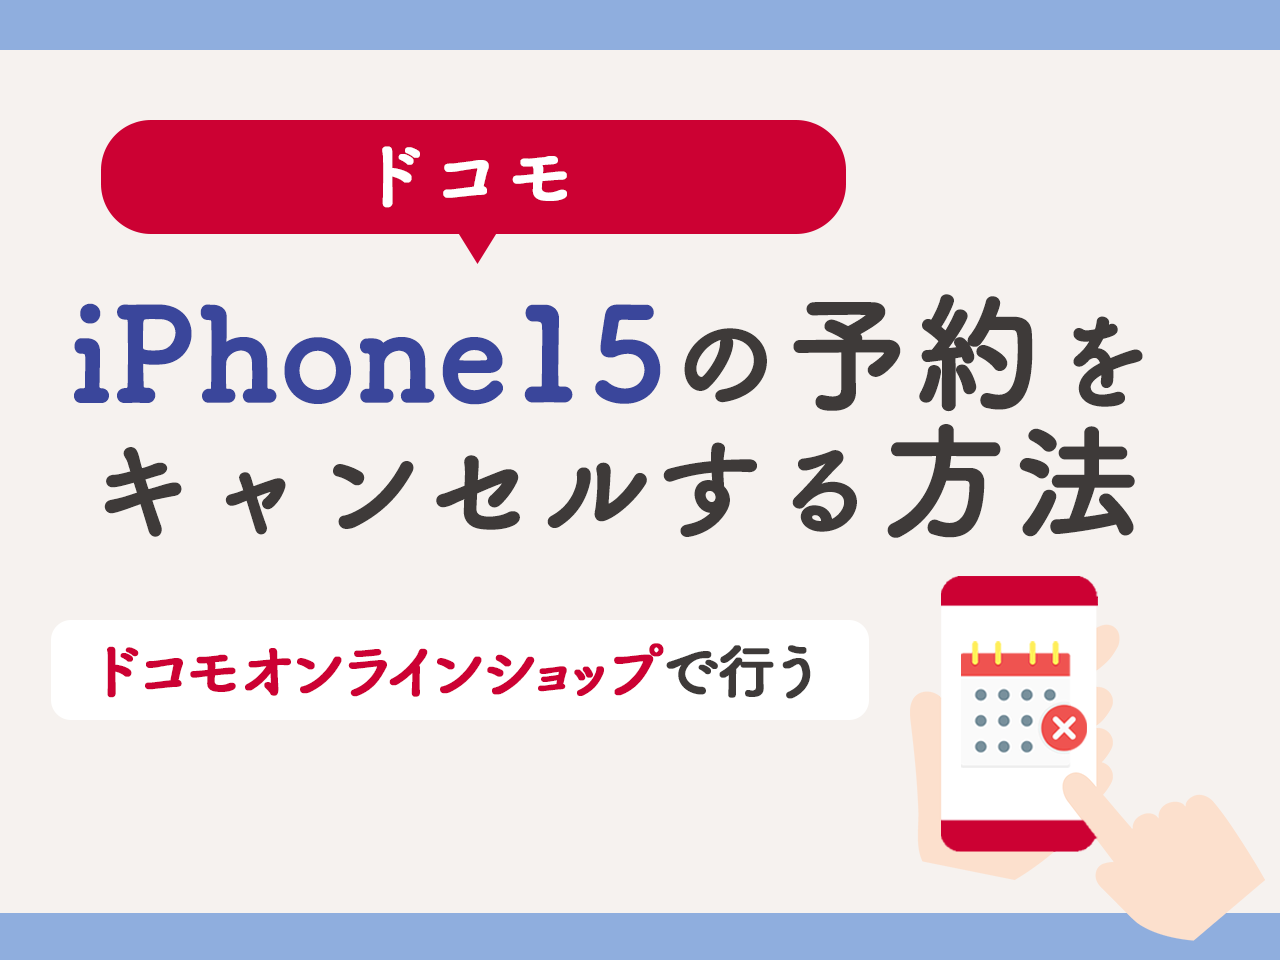 ドコモでiPhone15の予約をキャンセルする方法